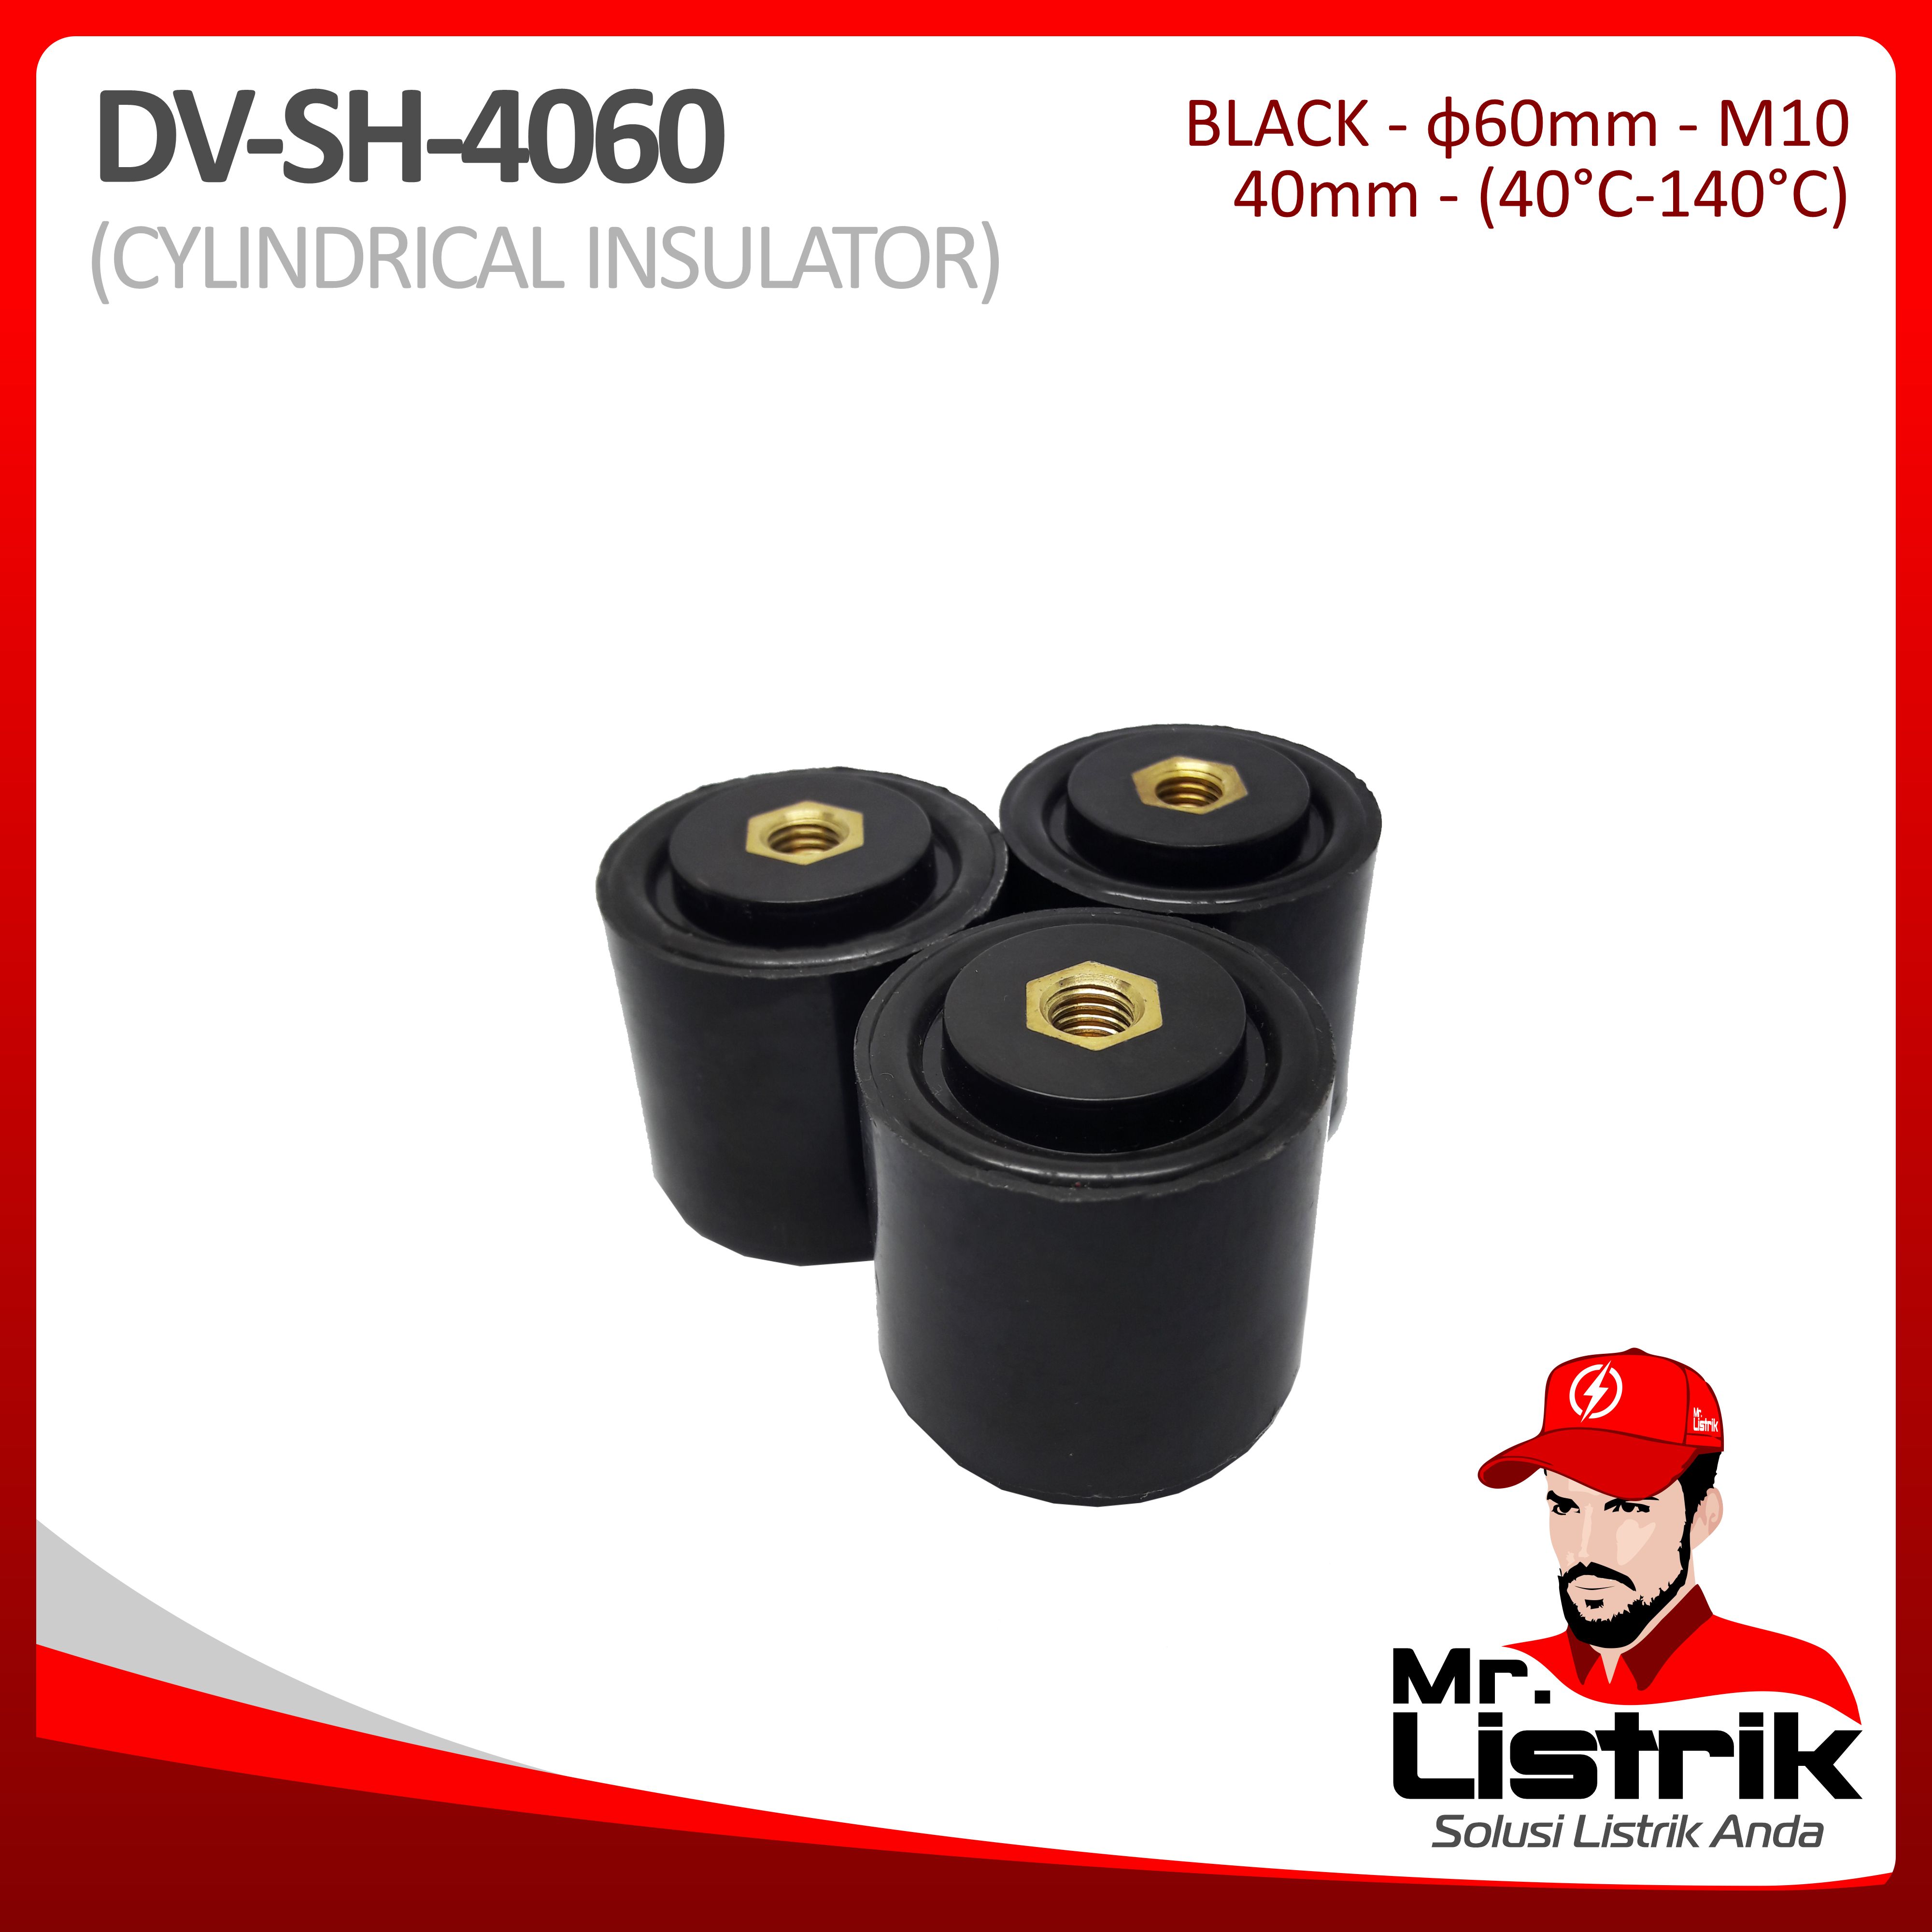 Cylindrical Insulator Rekolit DV SH-4060